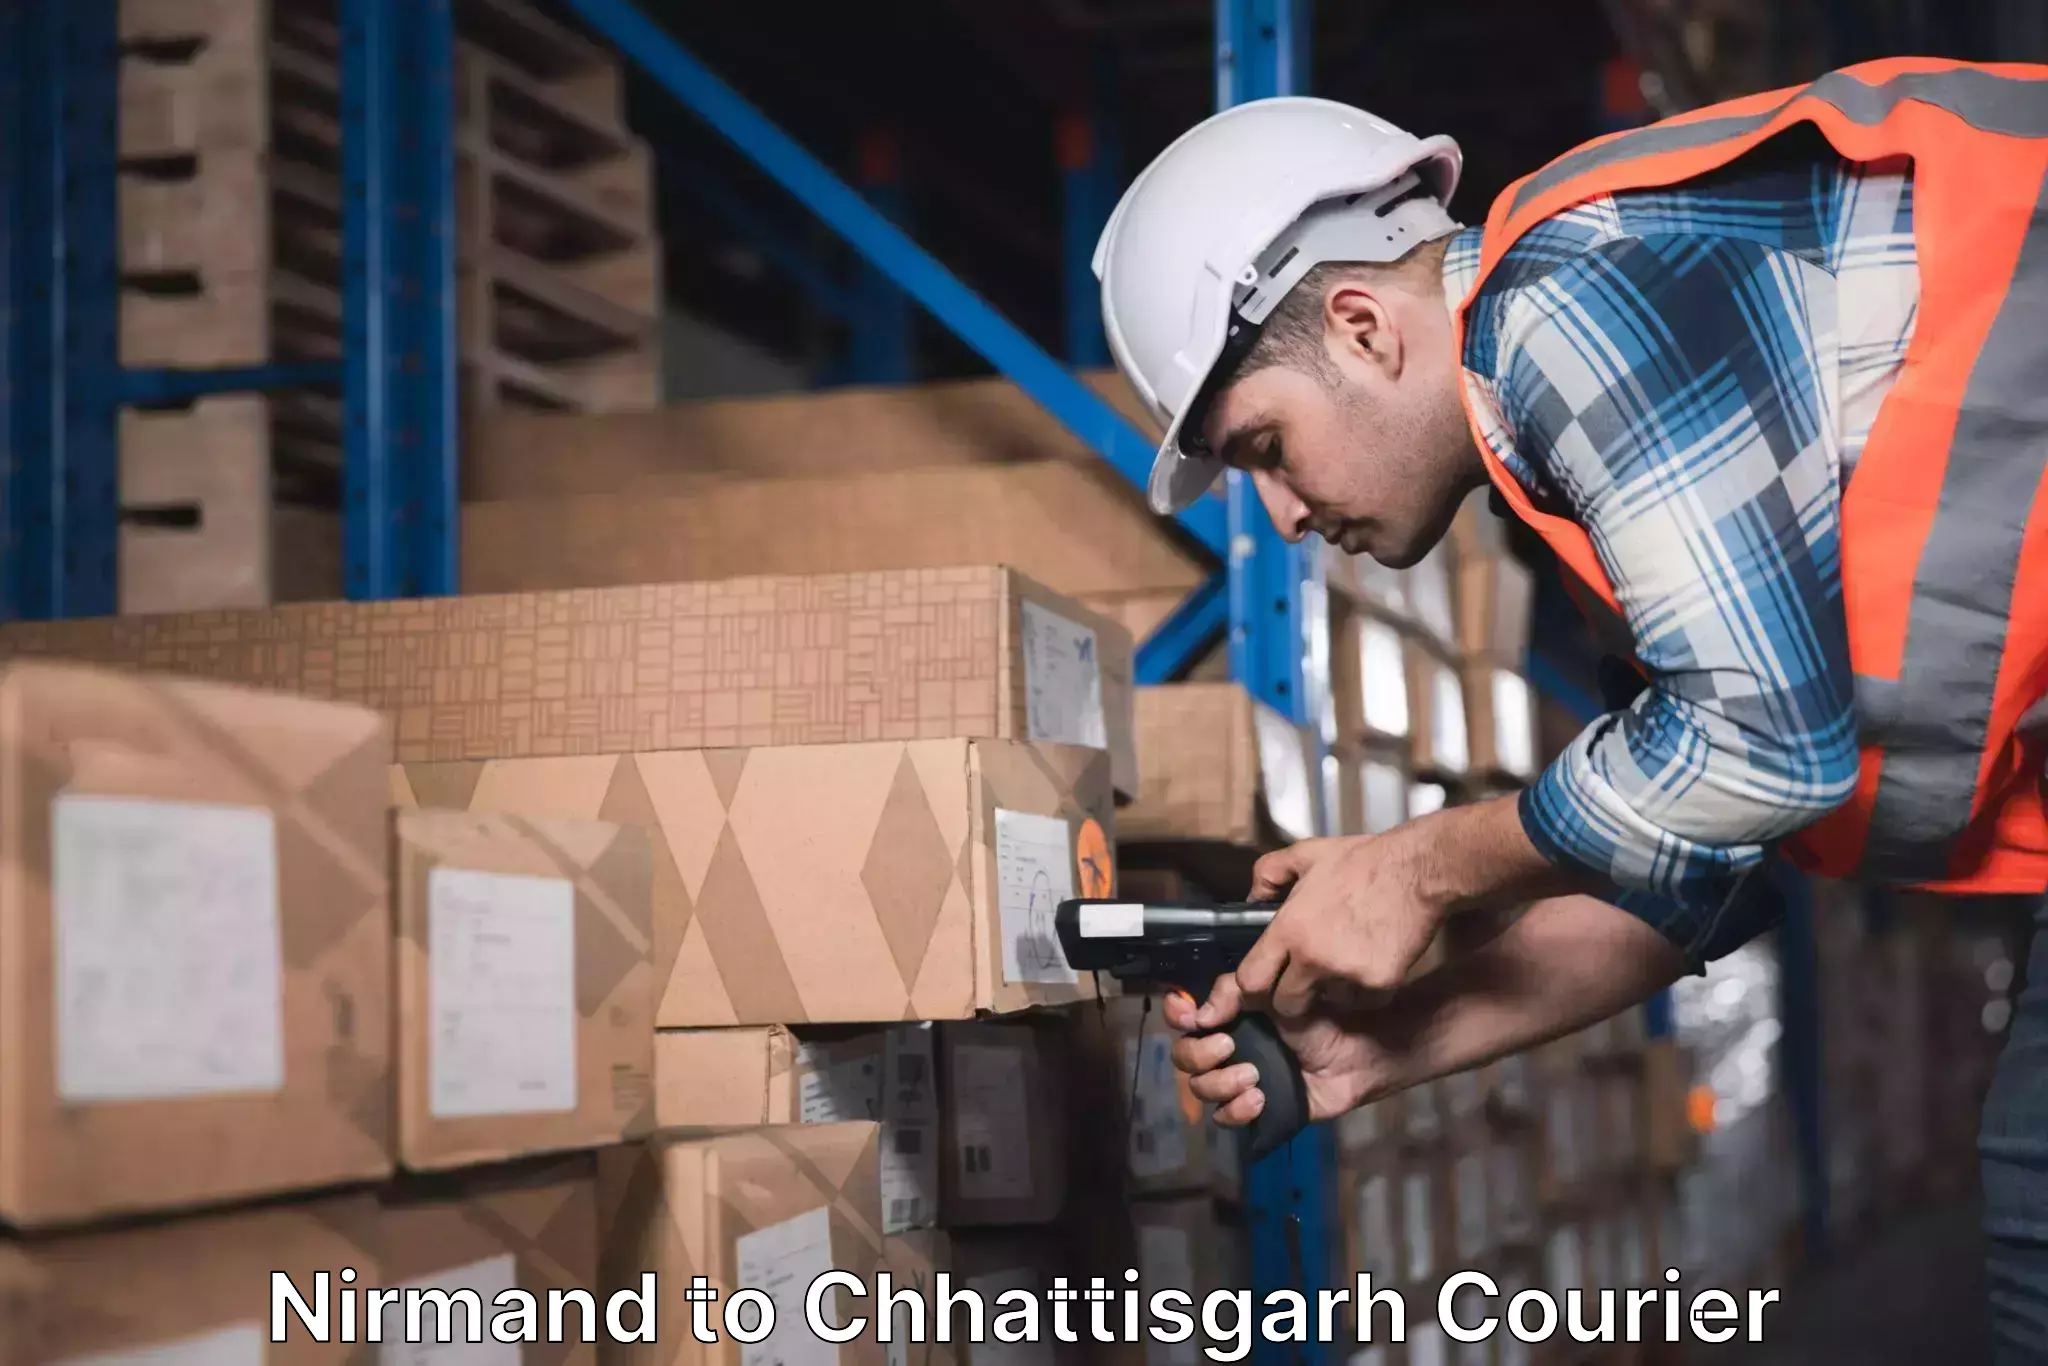 Business delivery service Nirmand to Chhattisgarh